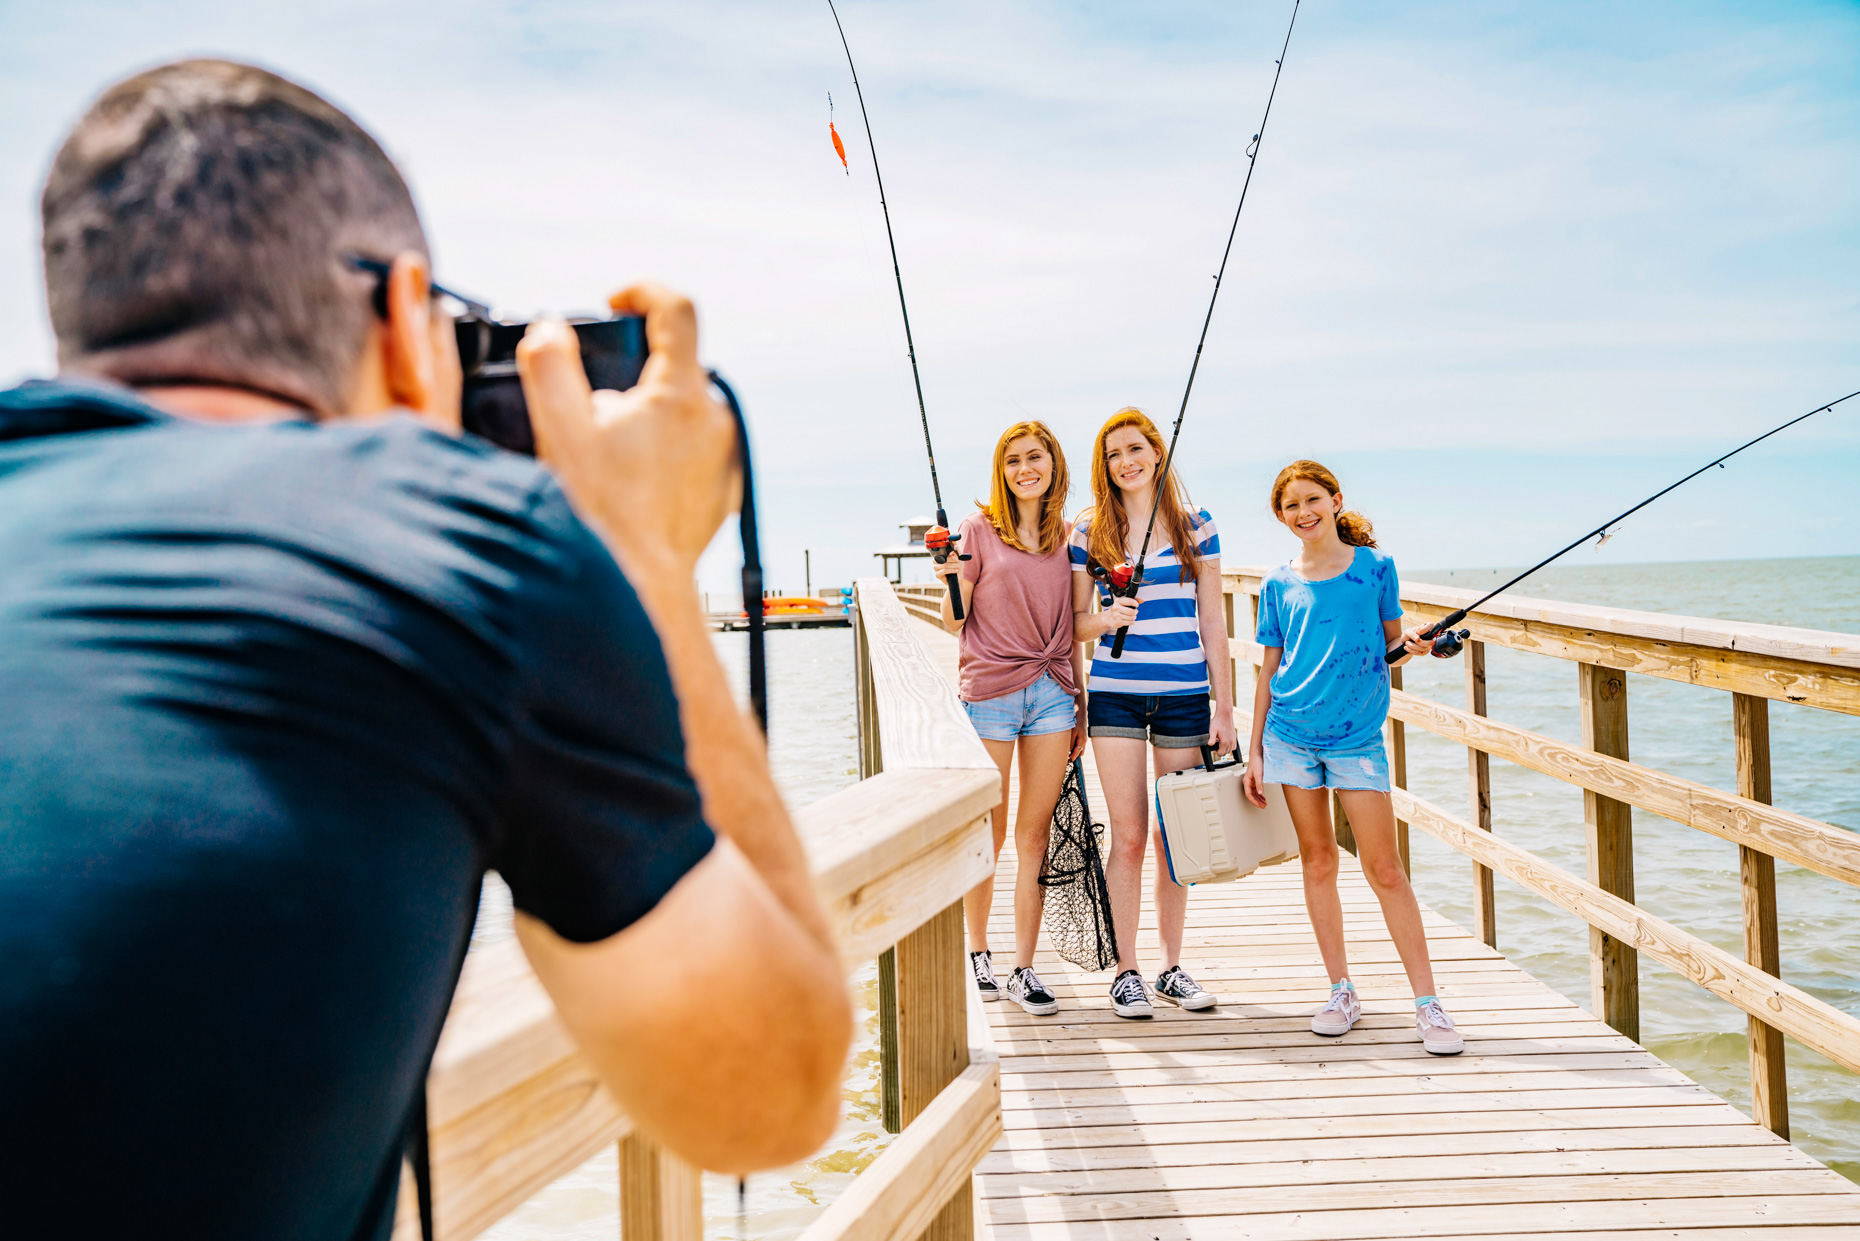 Man taking photo of girls on fishing dock